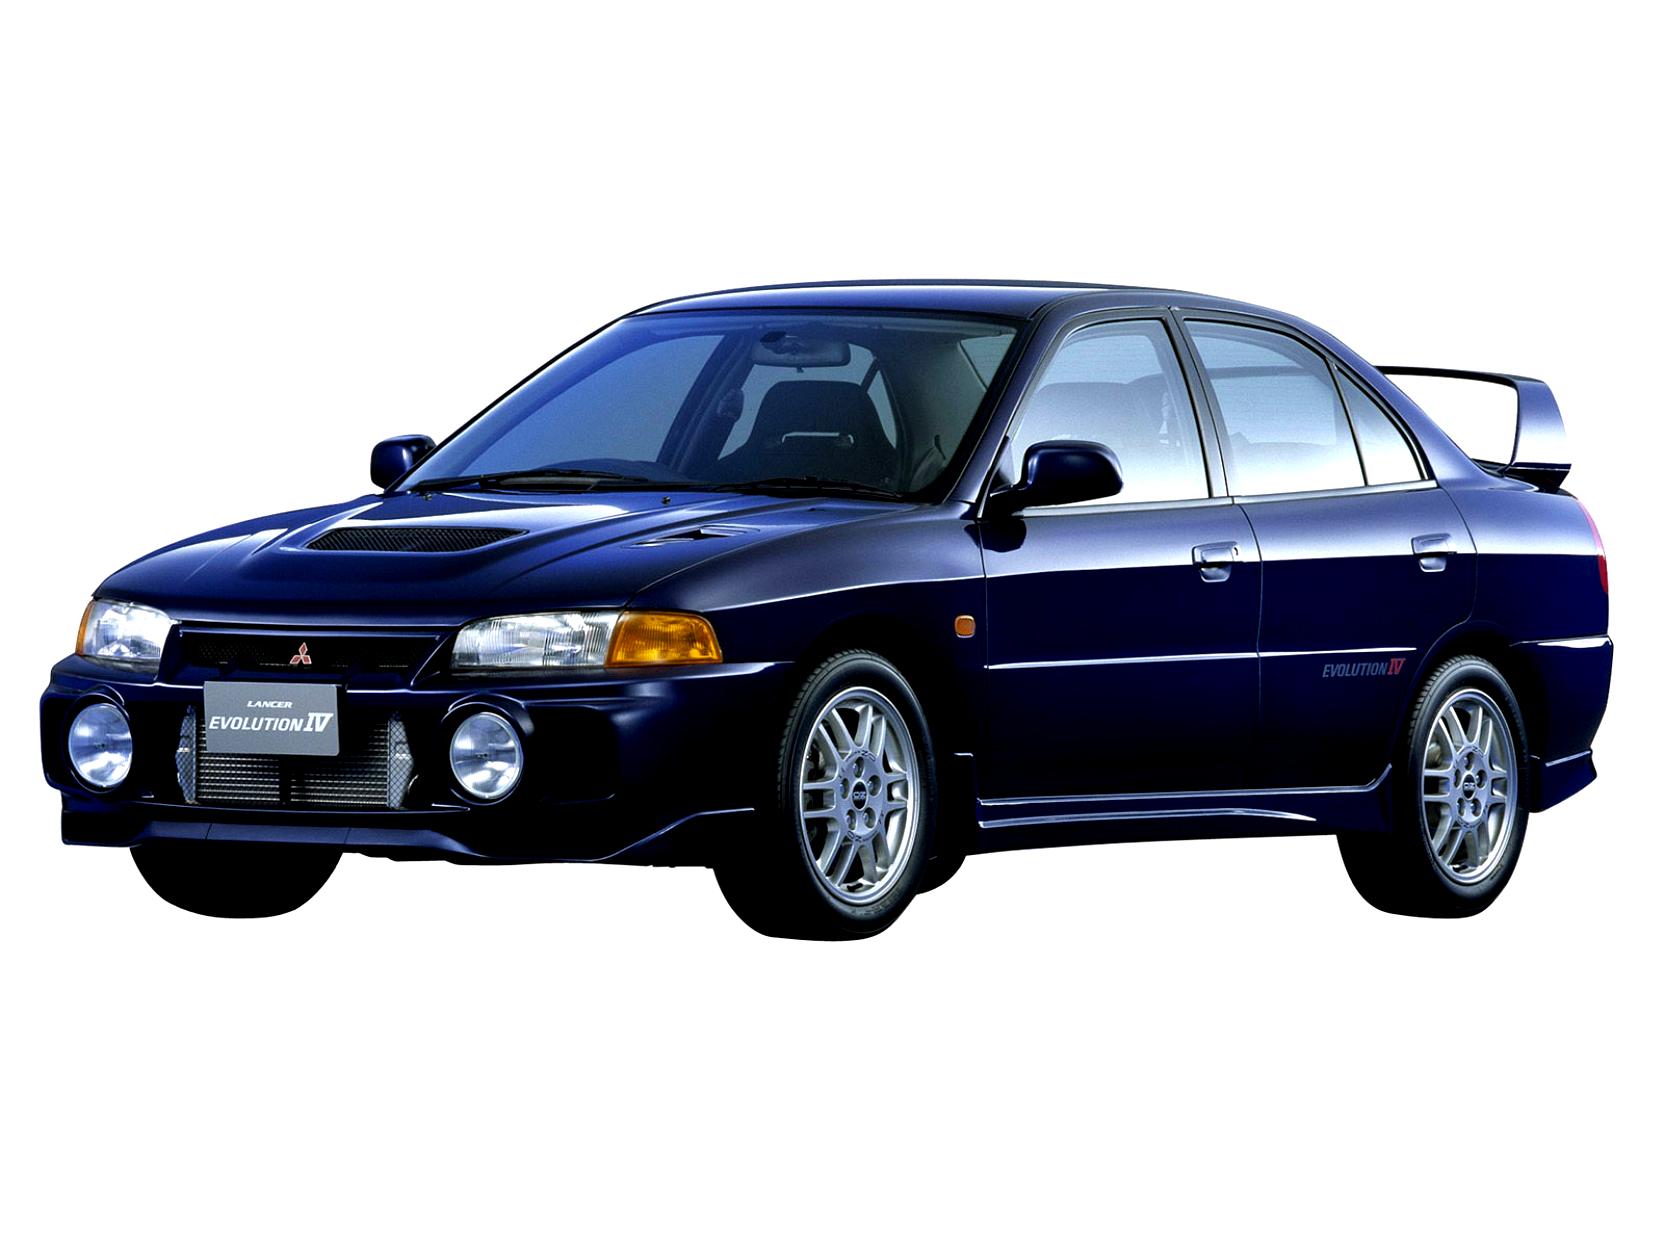 Mitsubishi Lancer Evolution IV 1996 #1